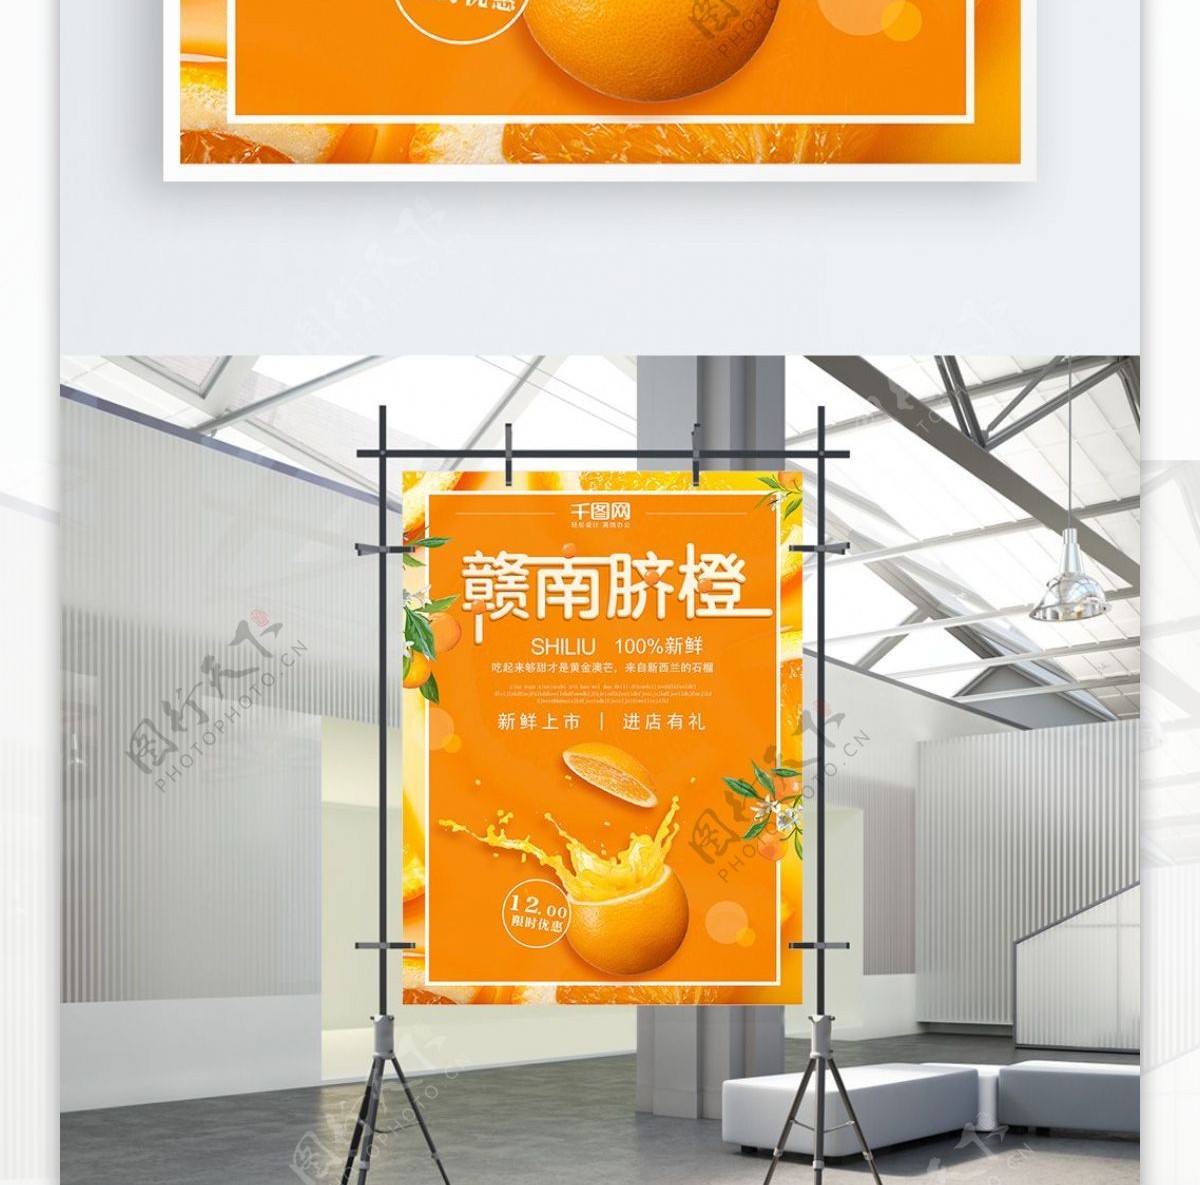 原创橙子促销海报